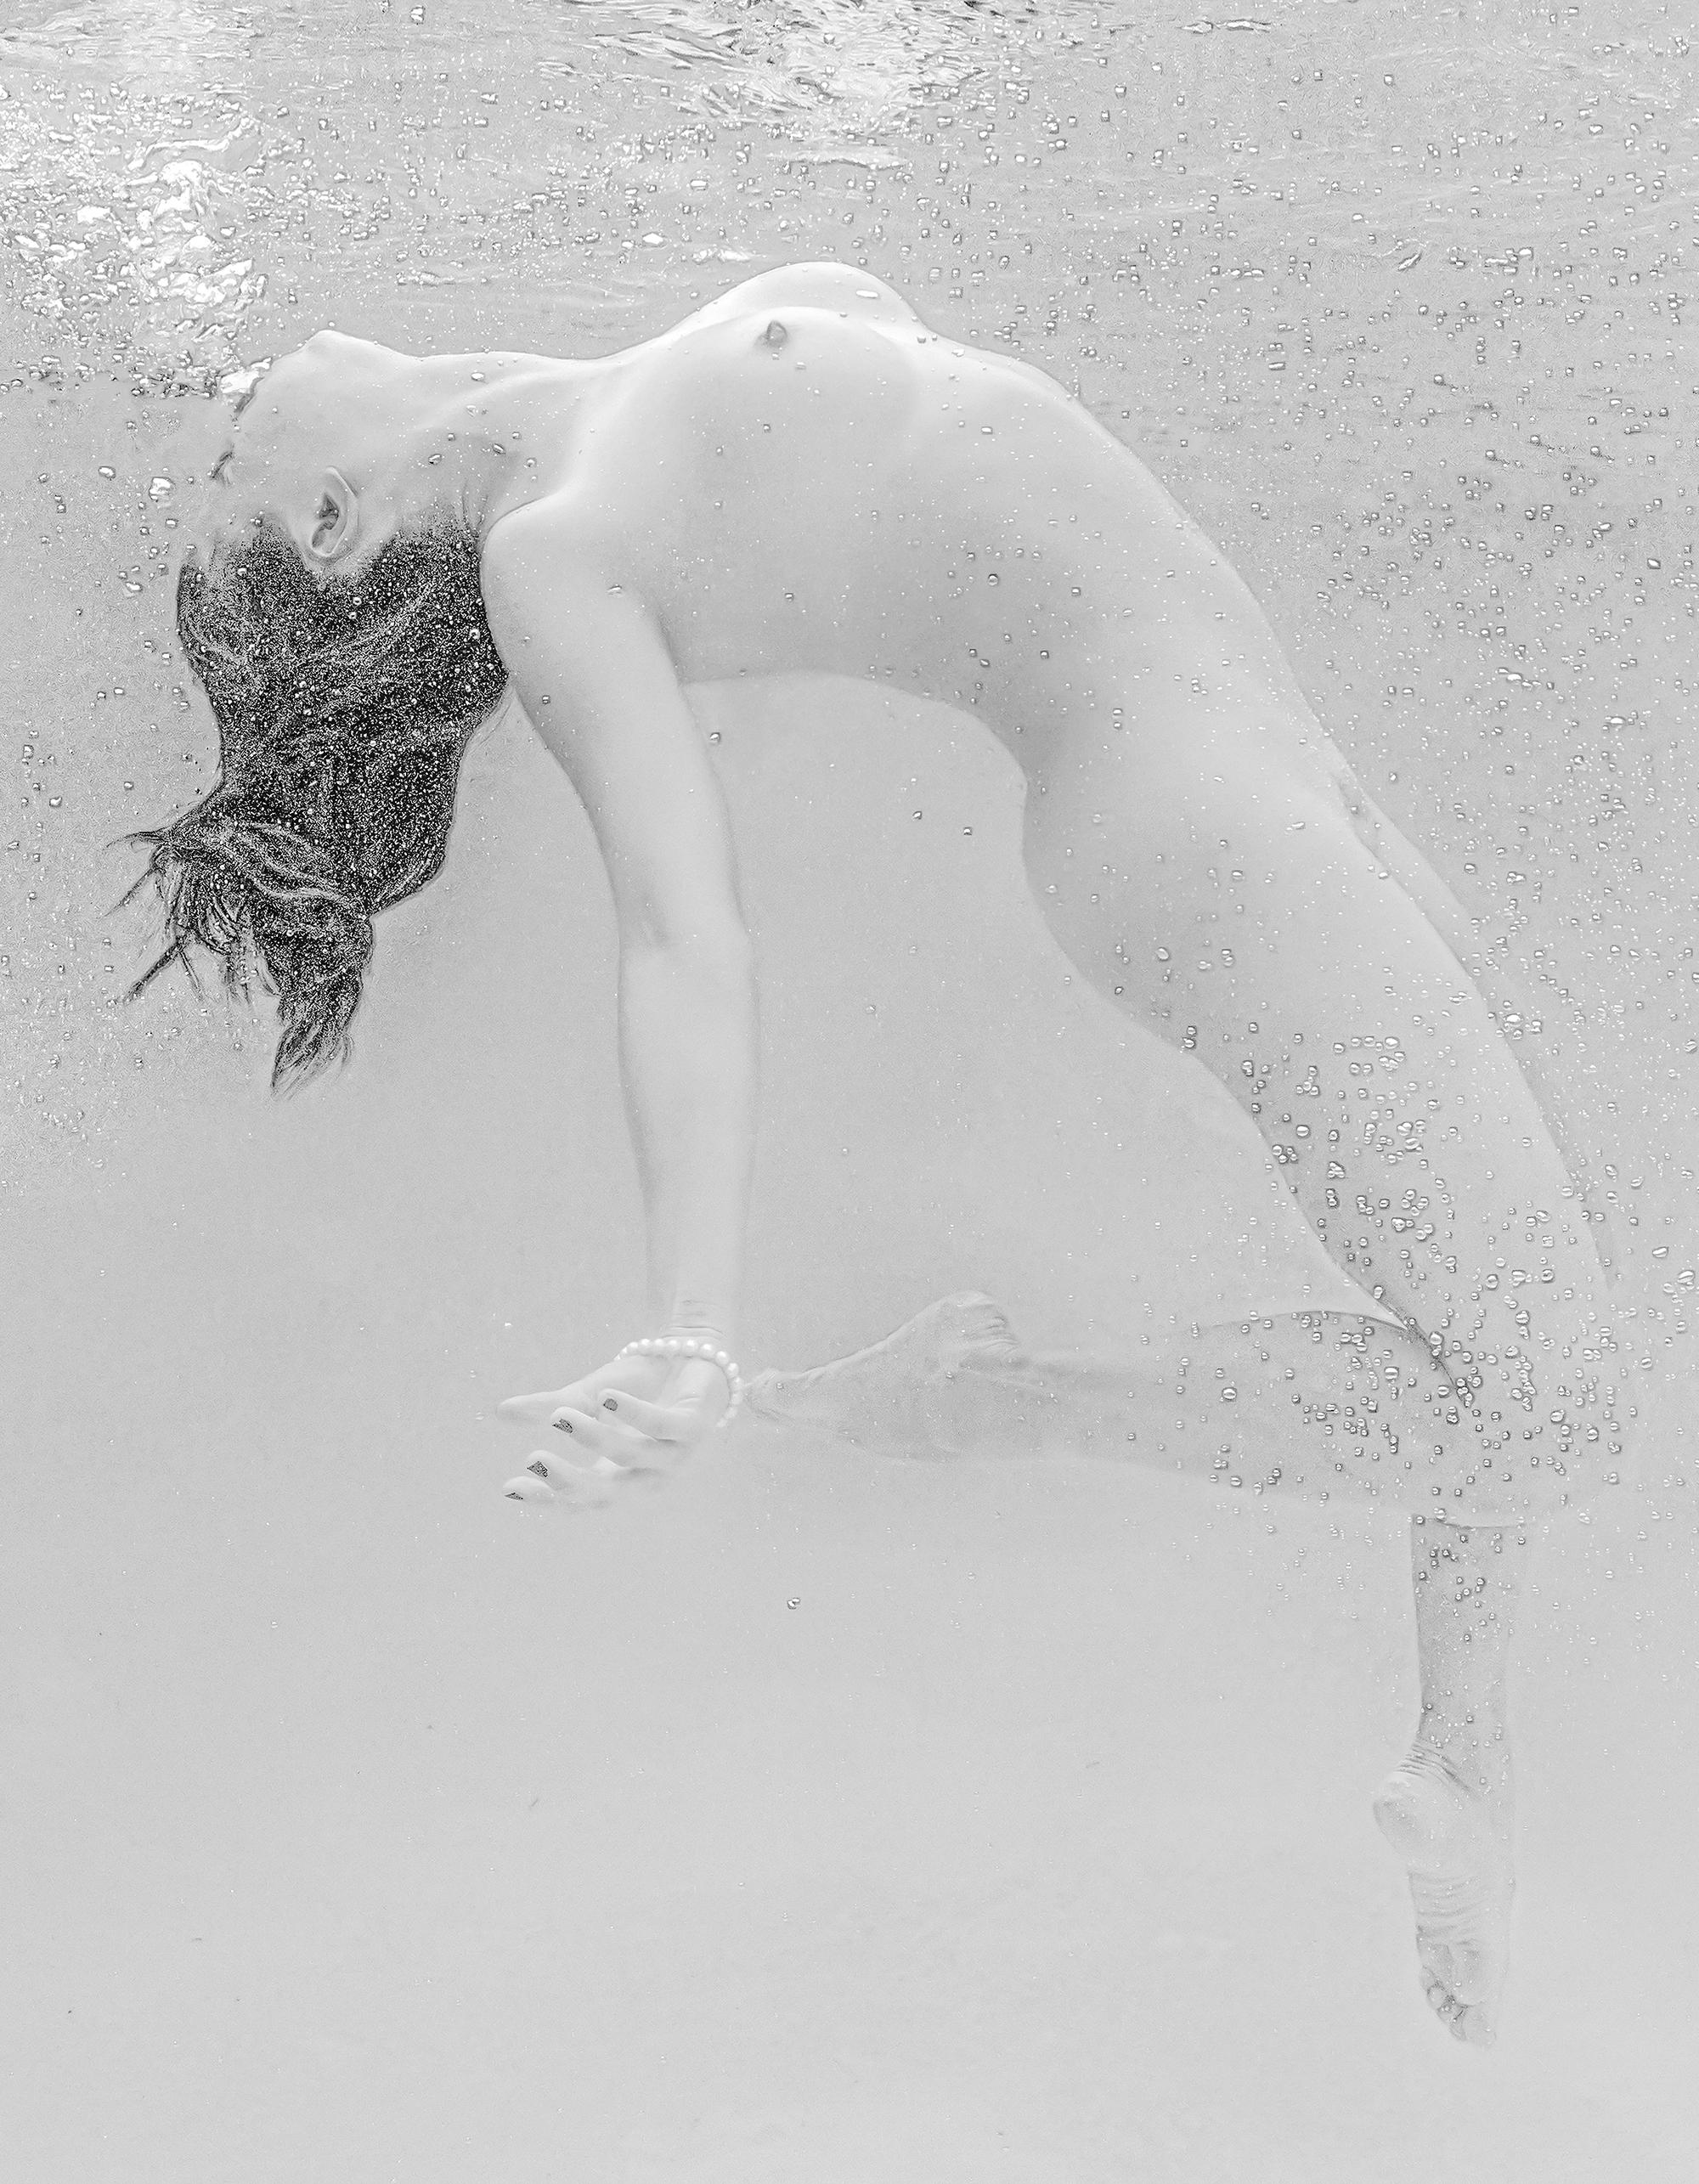 Soft Dance - Unterwasser Aktfotografie schwarz/weiß - Archivpigment 35 